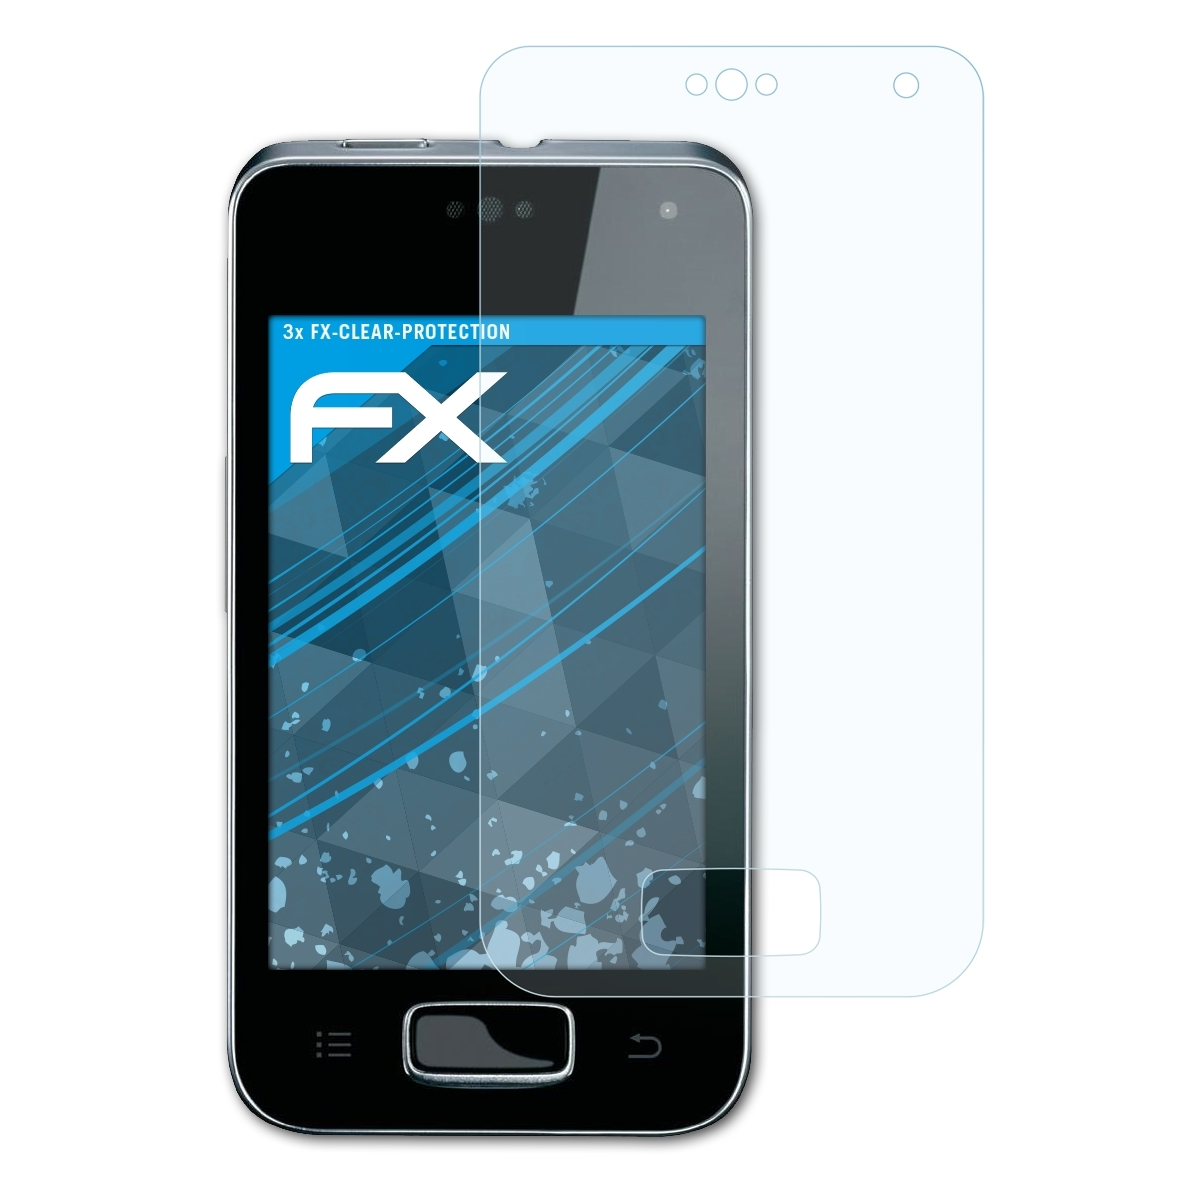 ATFOLIX 3x FX-Clear Displayschutz(für Panasonic KX-PRX120)